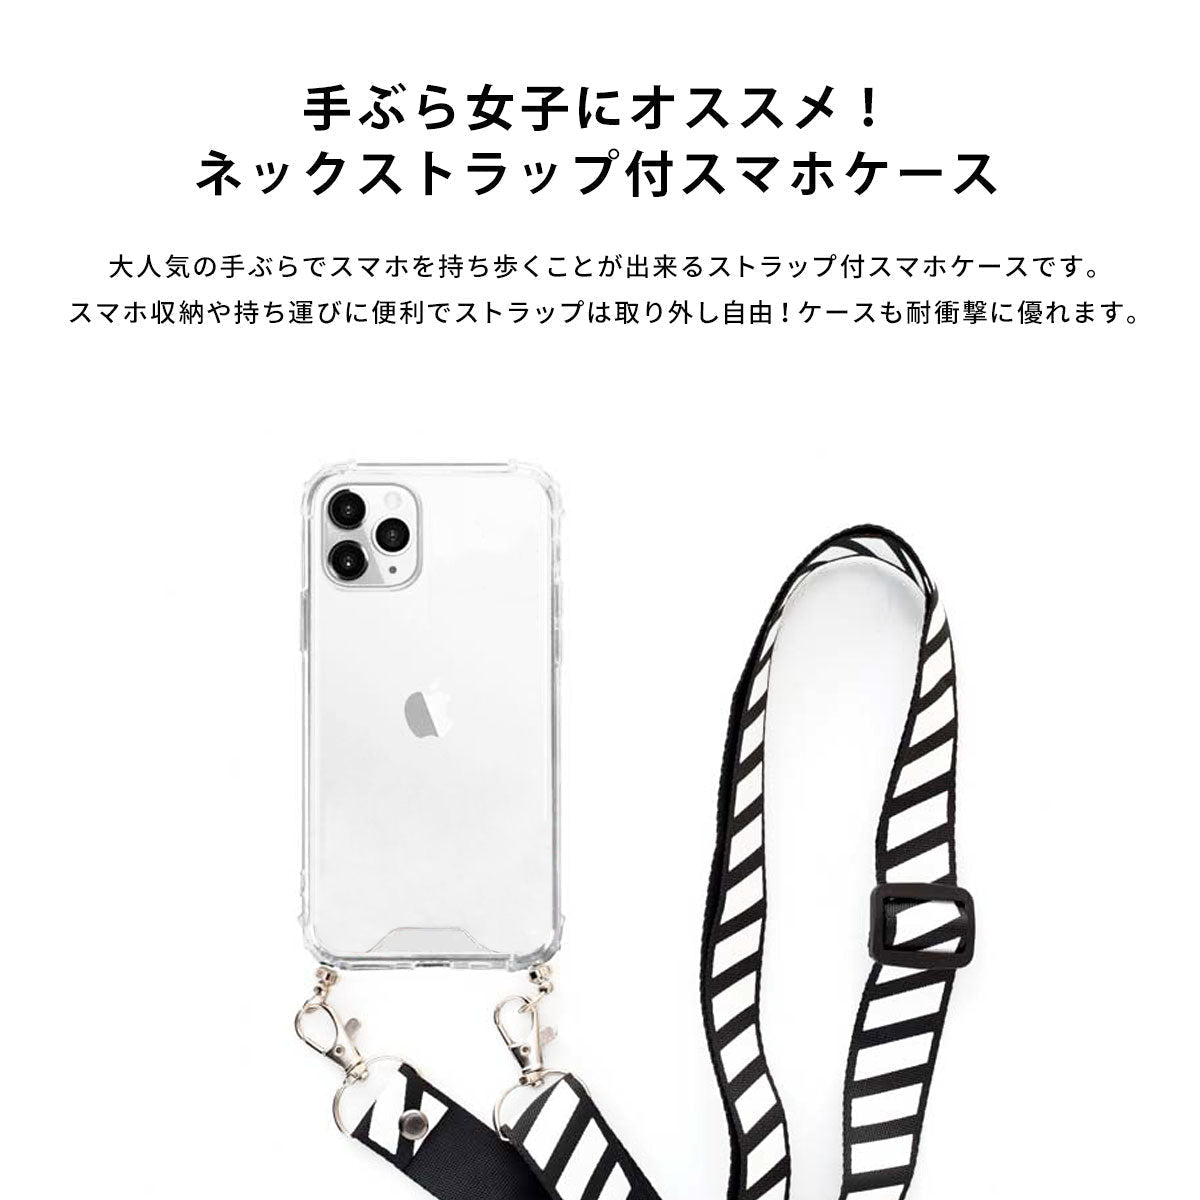 【手ぶら派に】ネックストラップ スマホケース  iPhone13 iPone12 かわいい おしゃれ  ネックストラップ付き 魚 名入れ